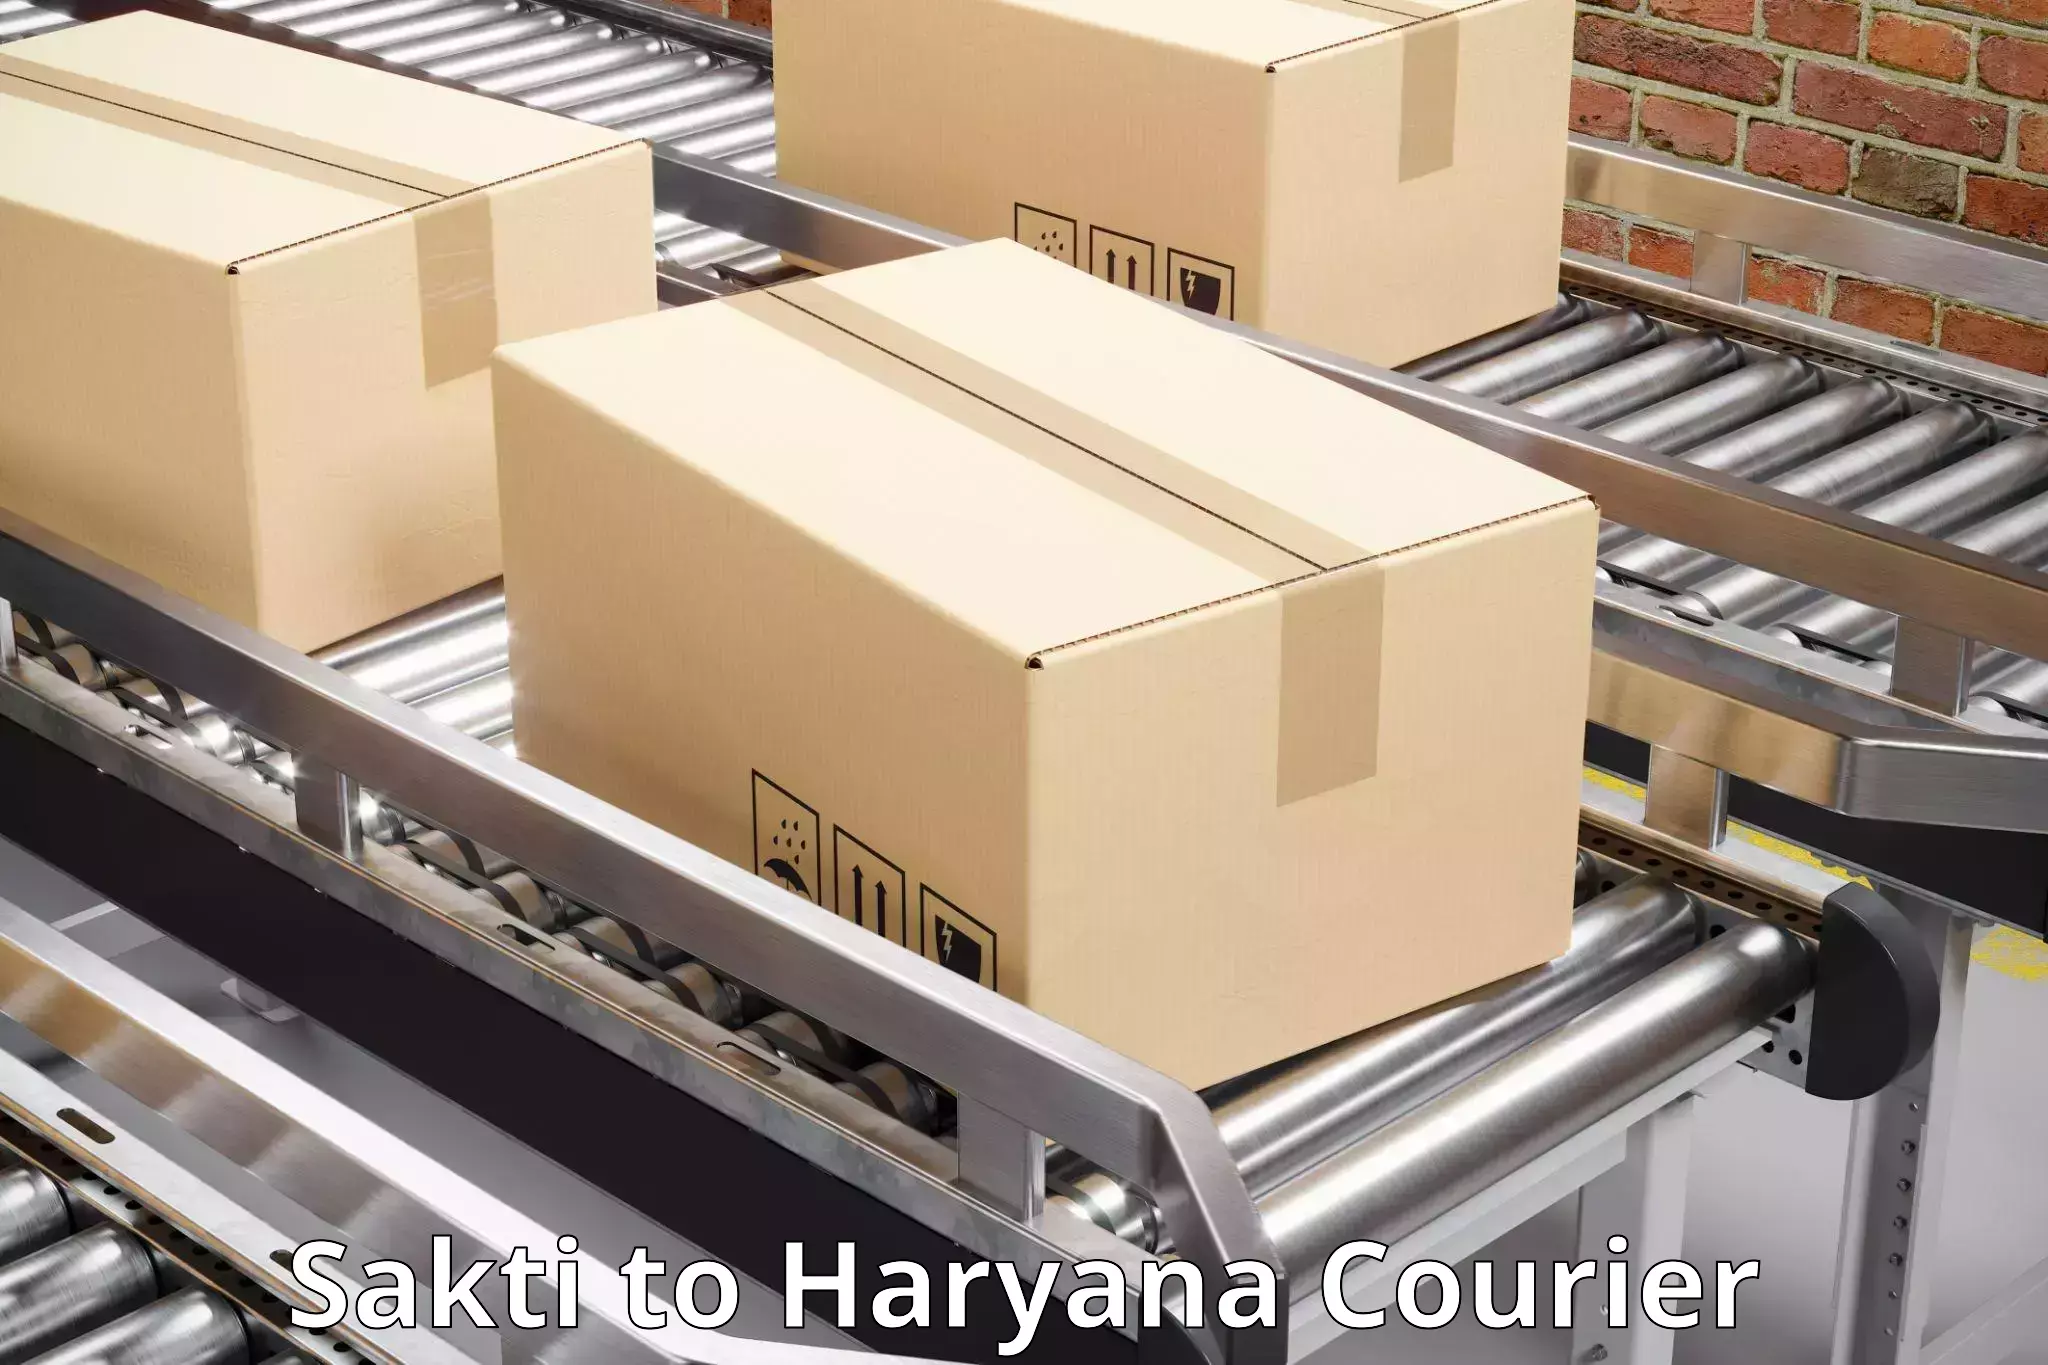 High value parcel delivery in Sakti to Hansi